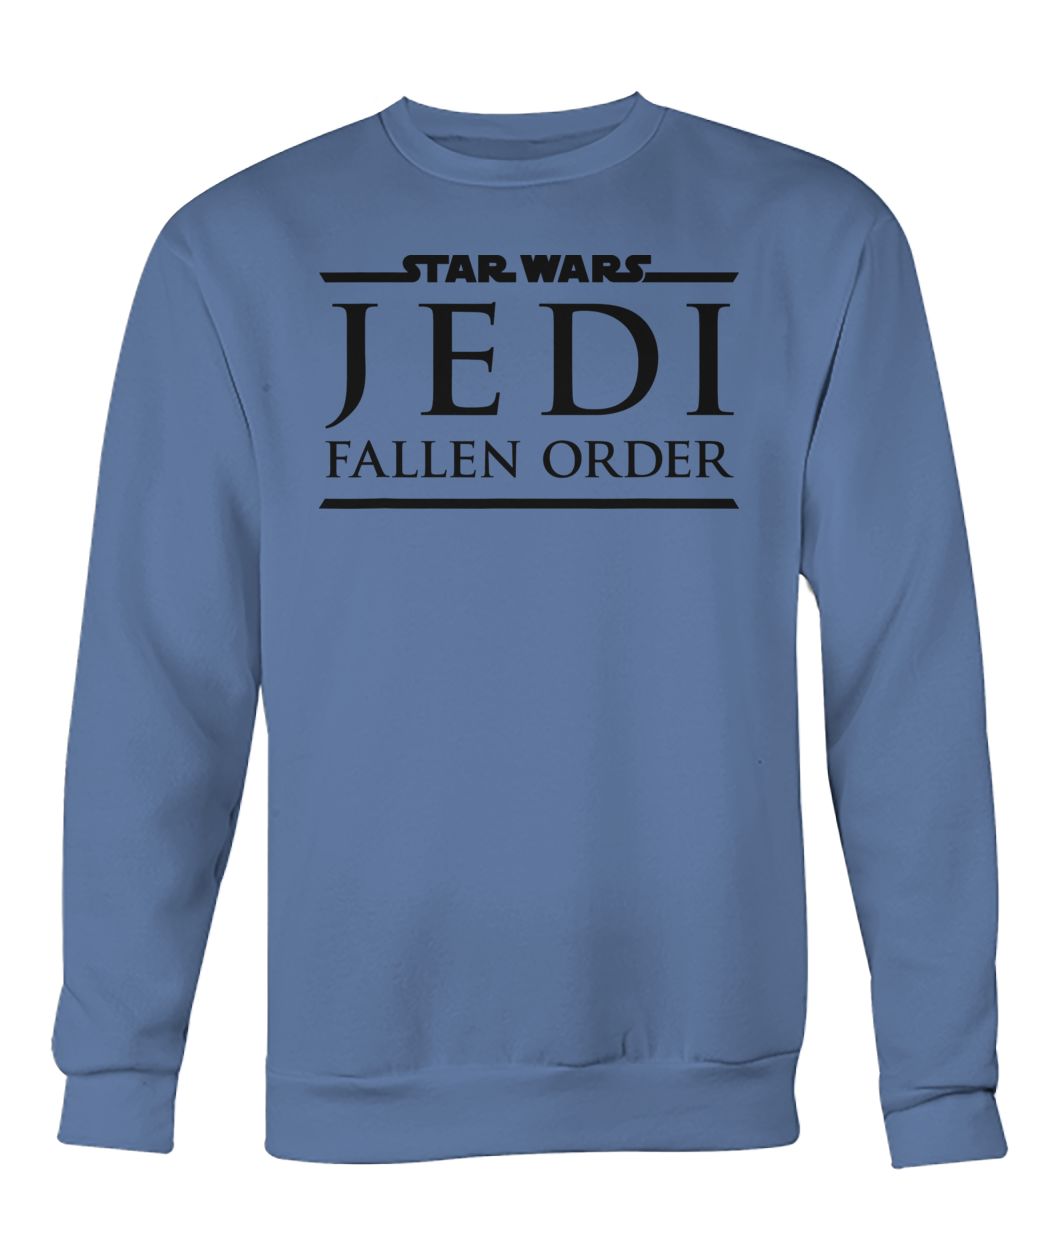 Star wars game jedi fallen order logo crew neck sweatshirt